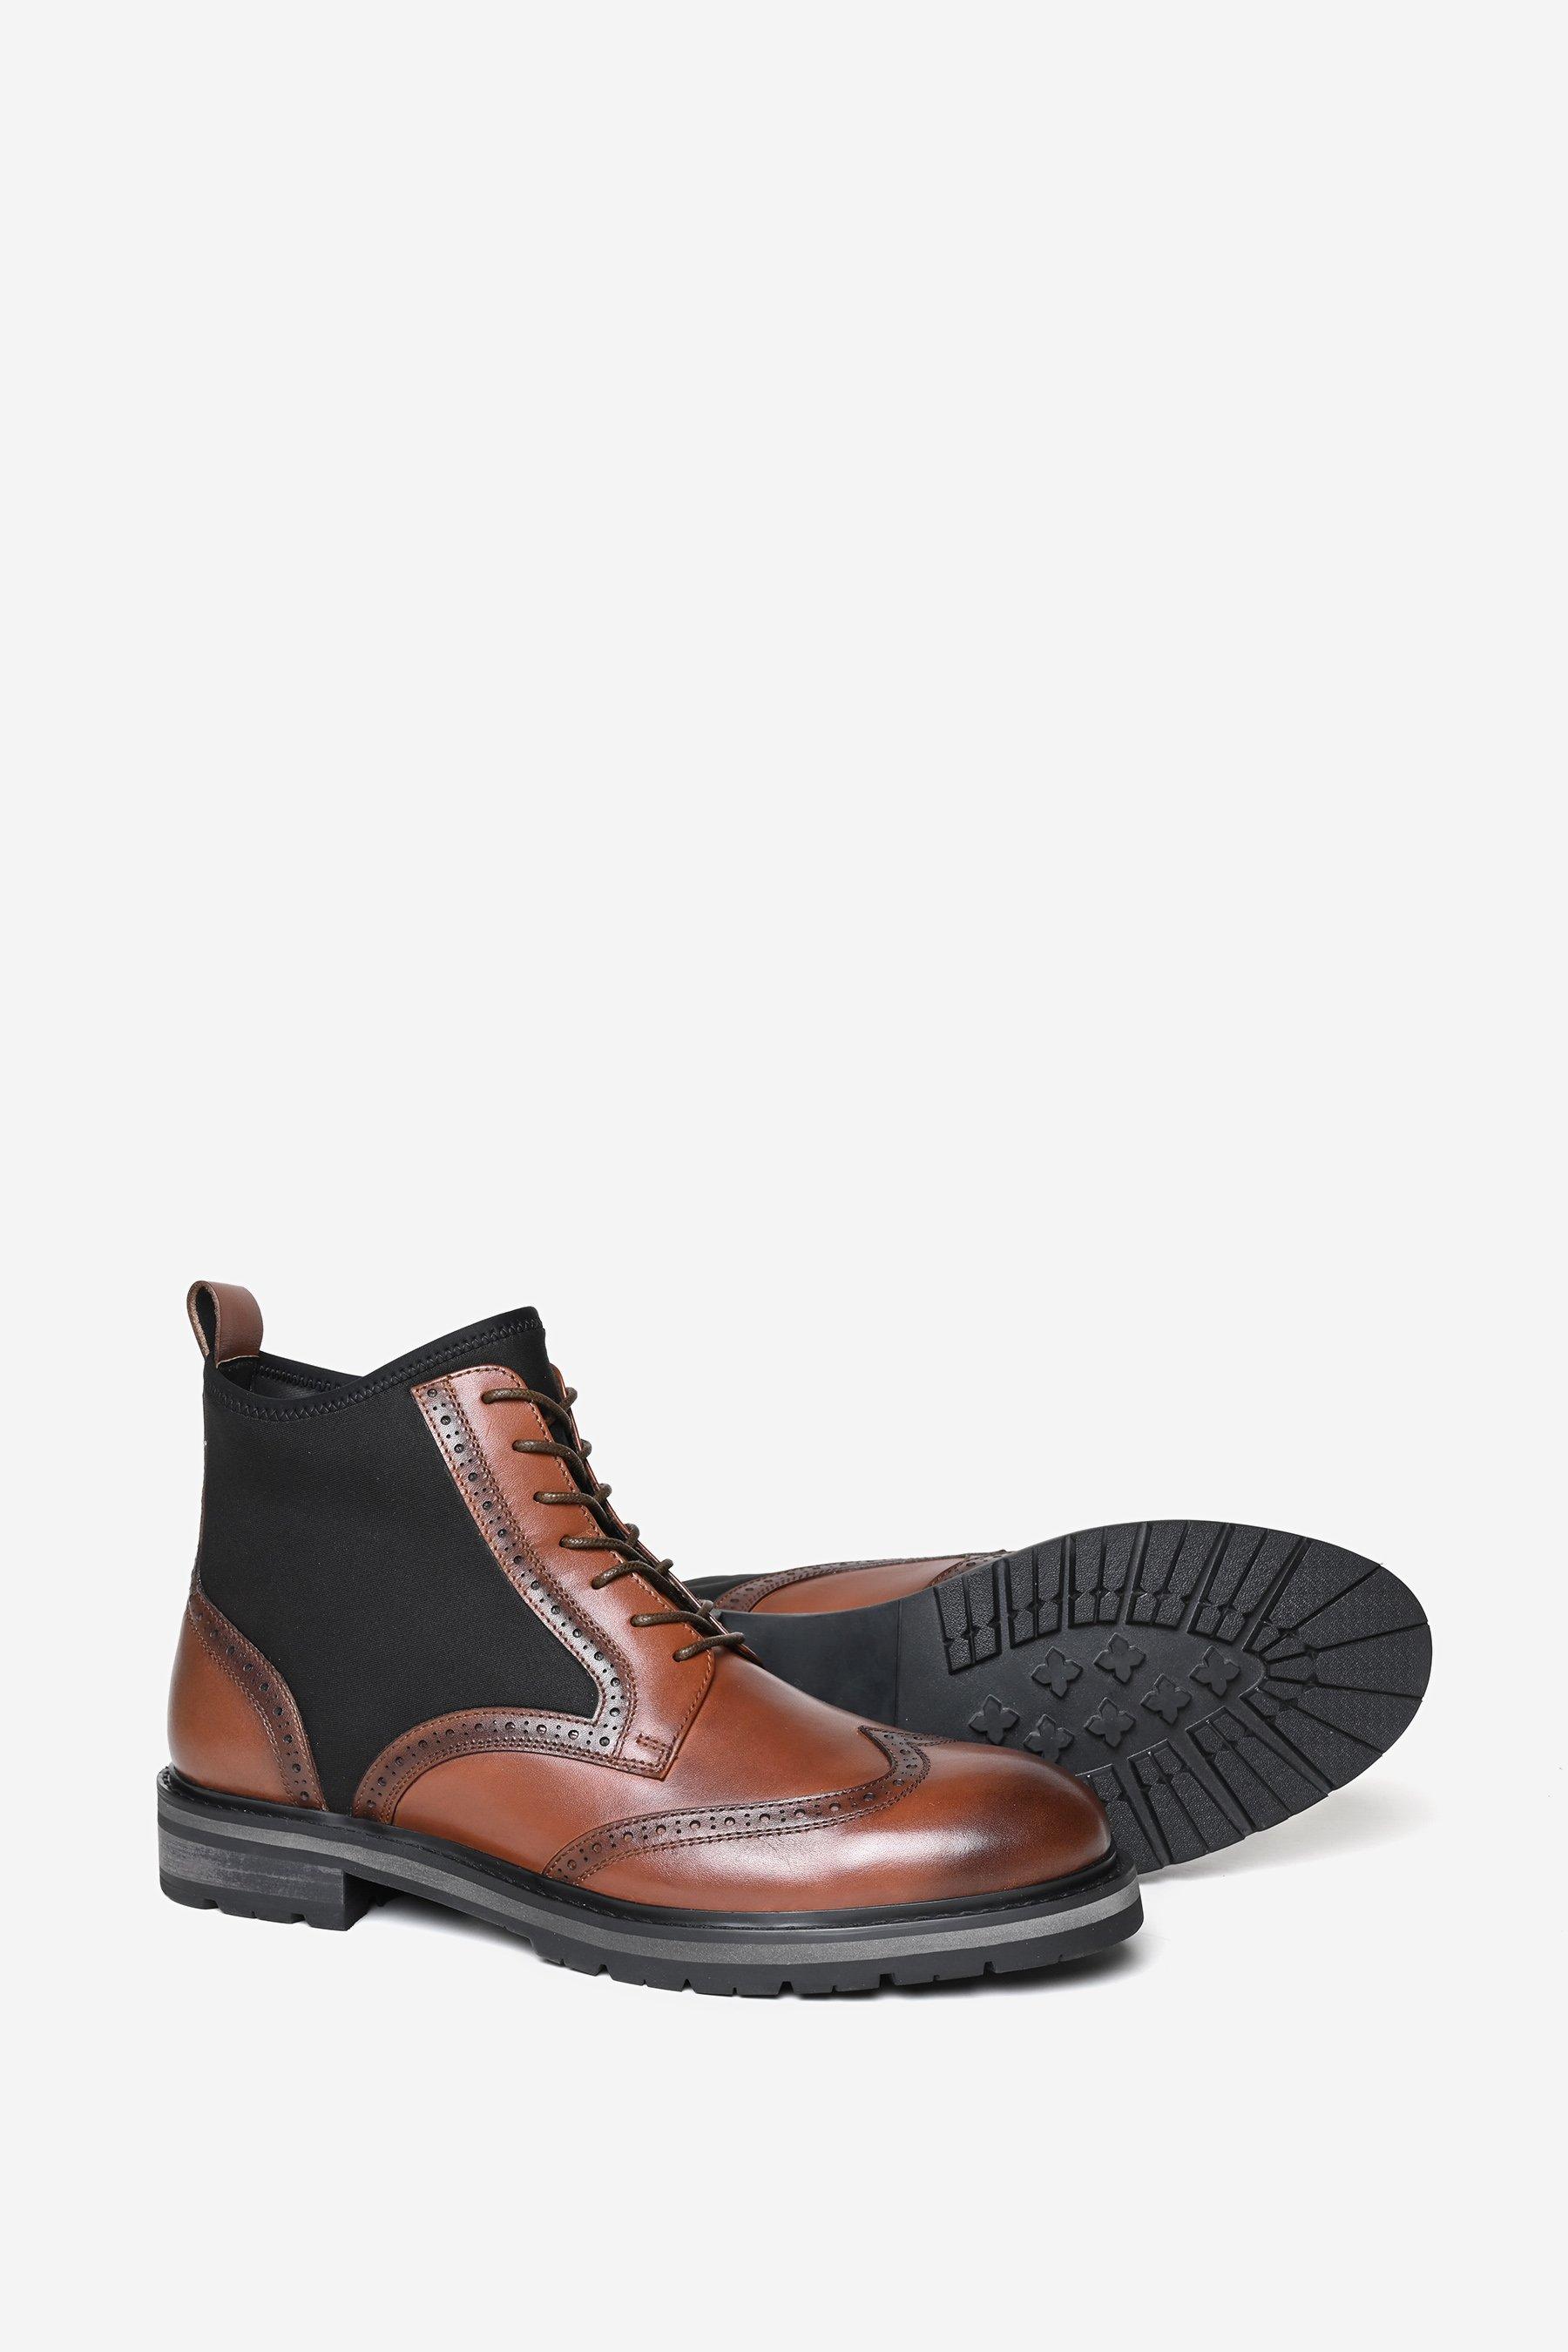 Кожаные ботинки дерби премиум-класса Aldgate Alexander Pace, коричневый